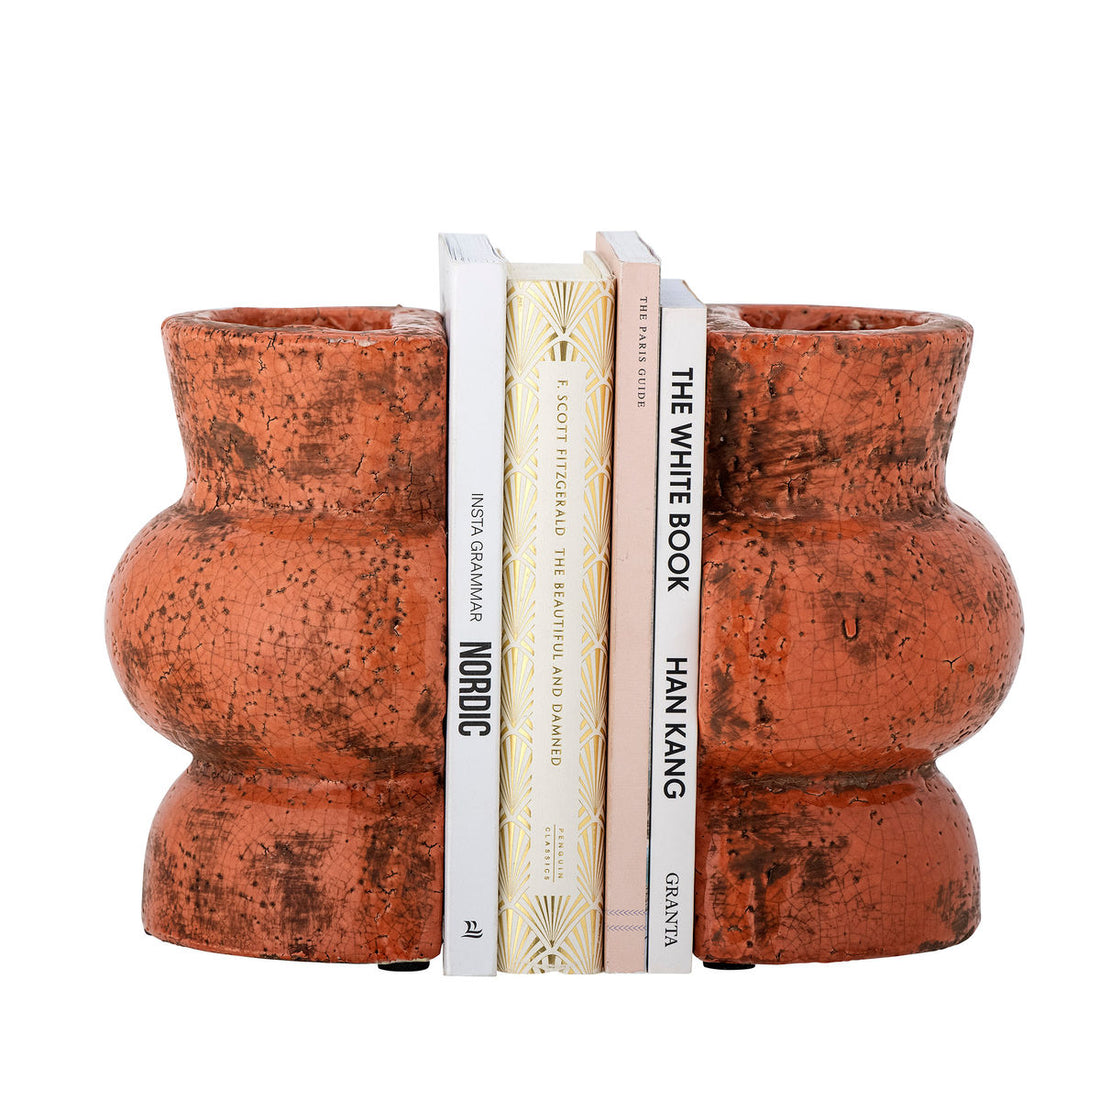 Coleção criativa Maiza Livro Suporte, laranja, terracota